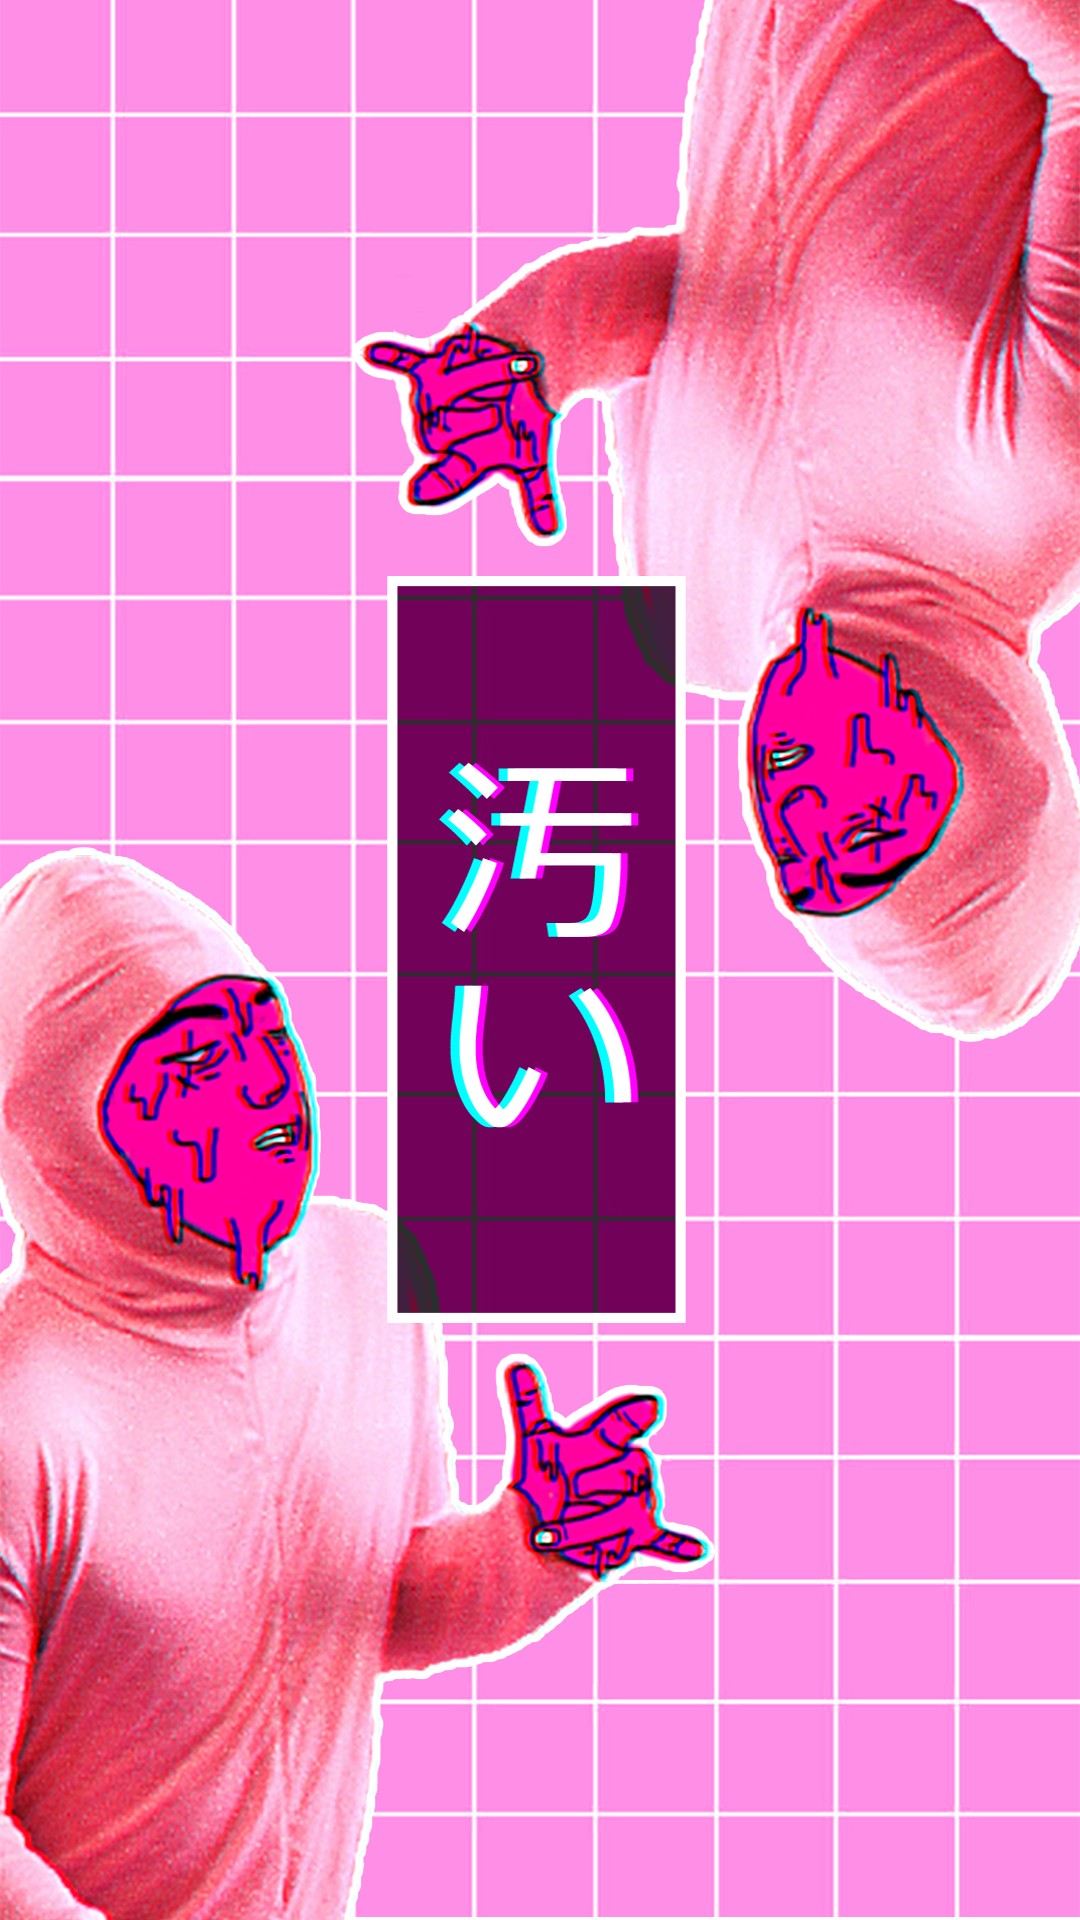 pink guy, Chromatic aberration, Digital art, Vaporwave, Love Wallpaper